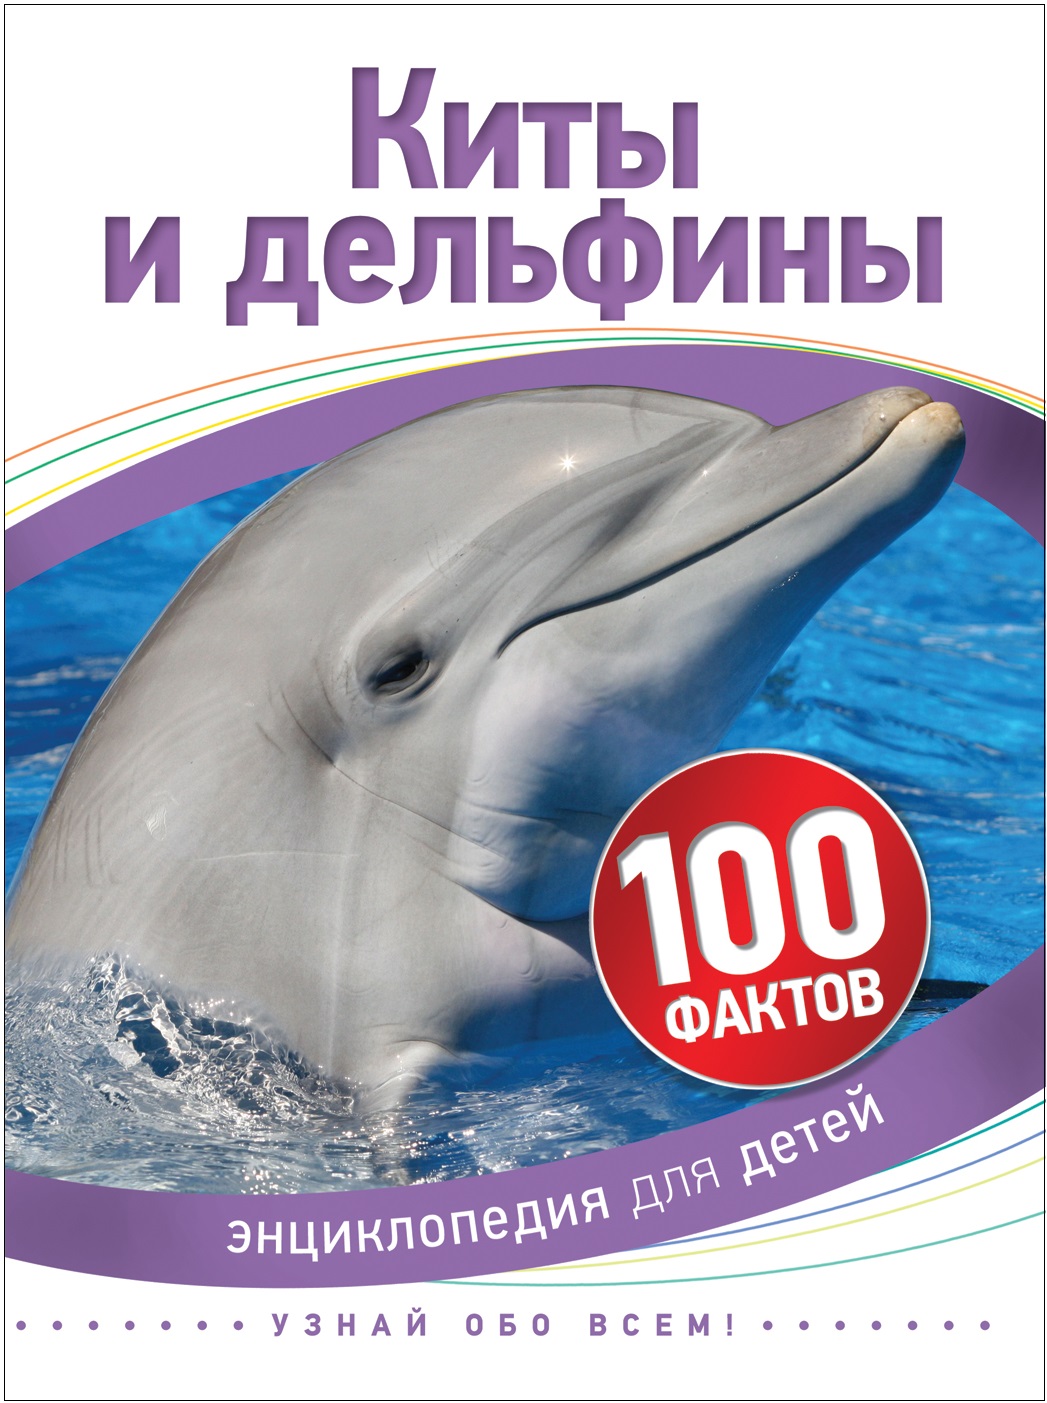 Книга 35069 "Киты и дельфины" 100 фактов Росмэн - Нижний Новгород 